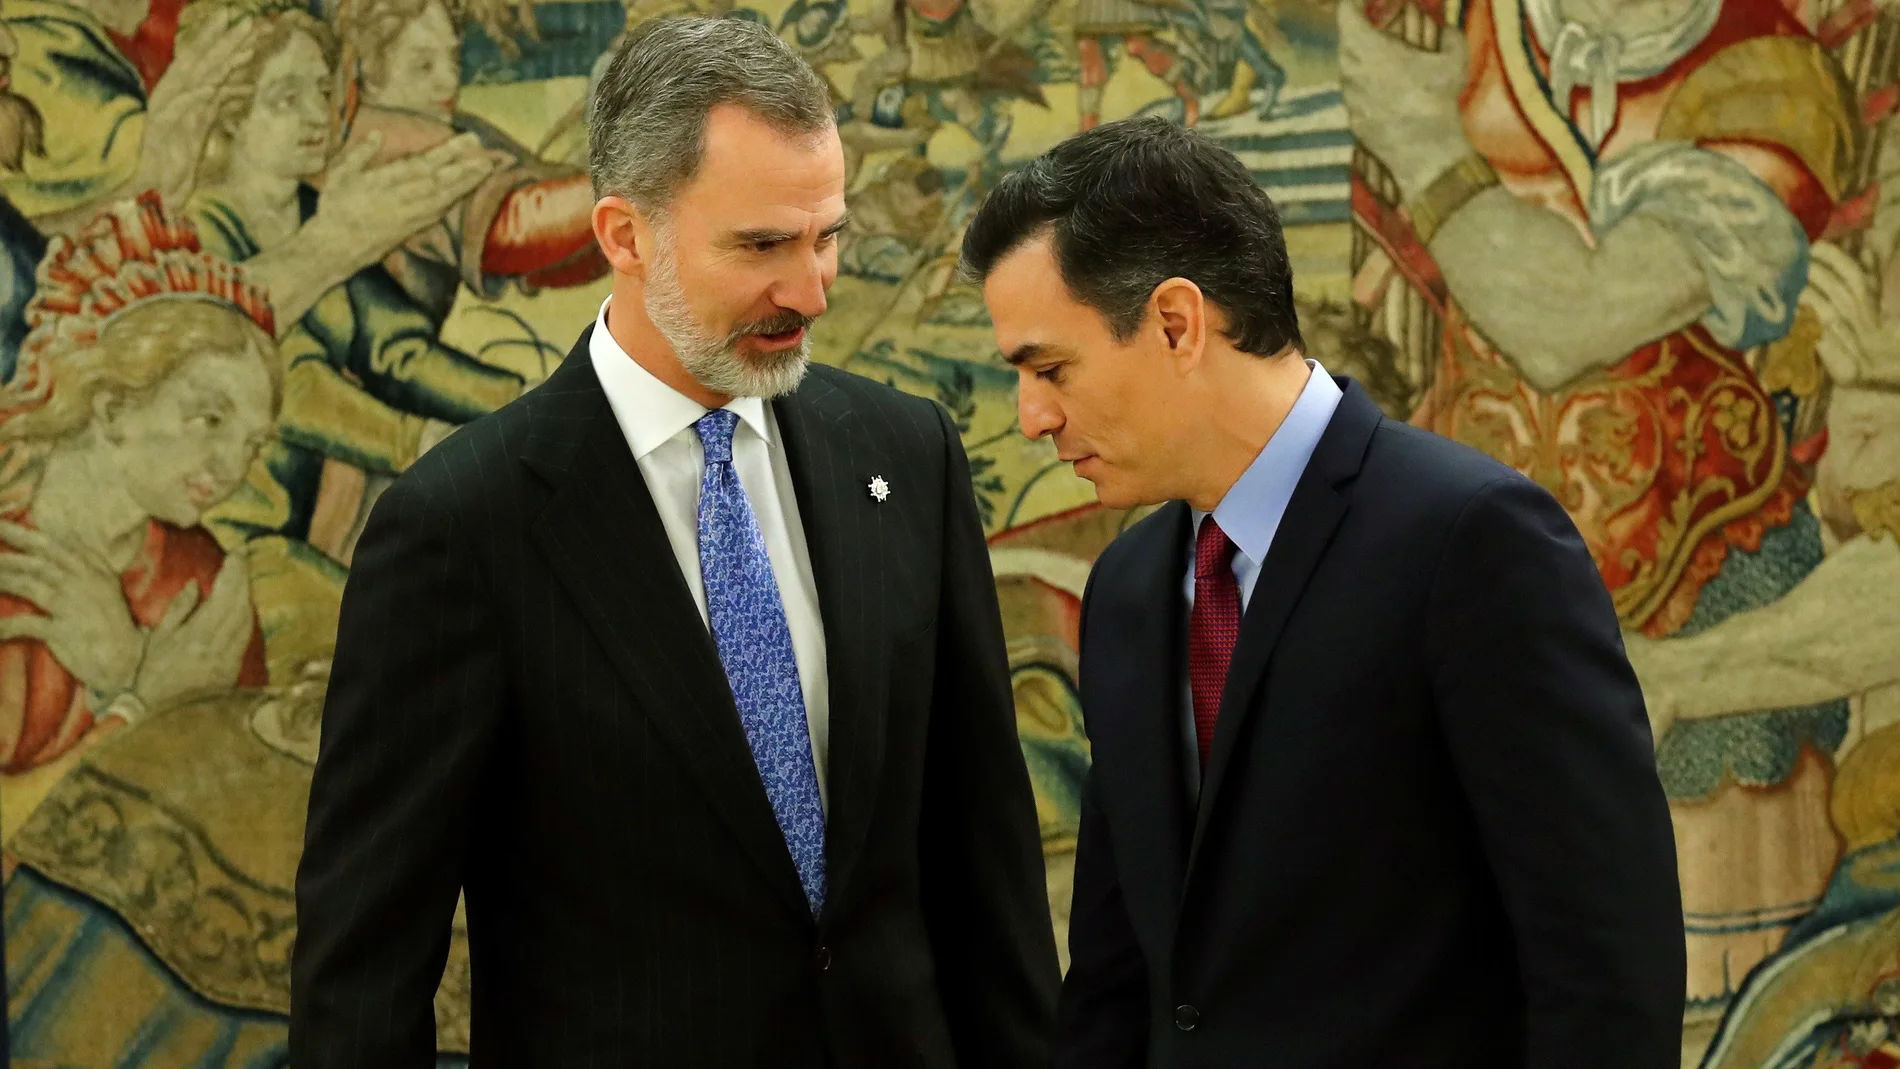 El presidente del gobierno Pedro Sánchez, y el rey Felipe VI, tras prometer su cargo esta mañana en el Palacio de la Zarzuela en Madrid.